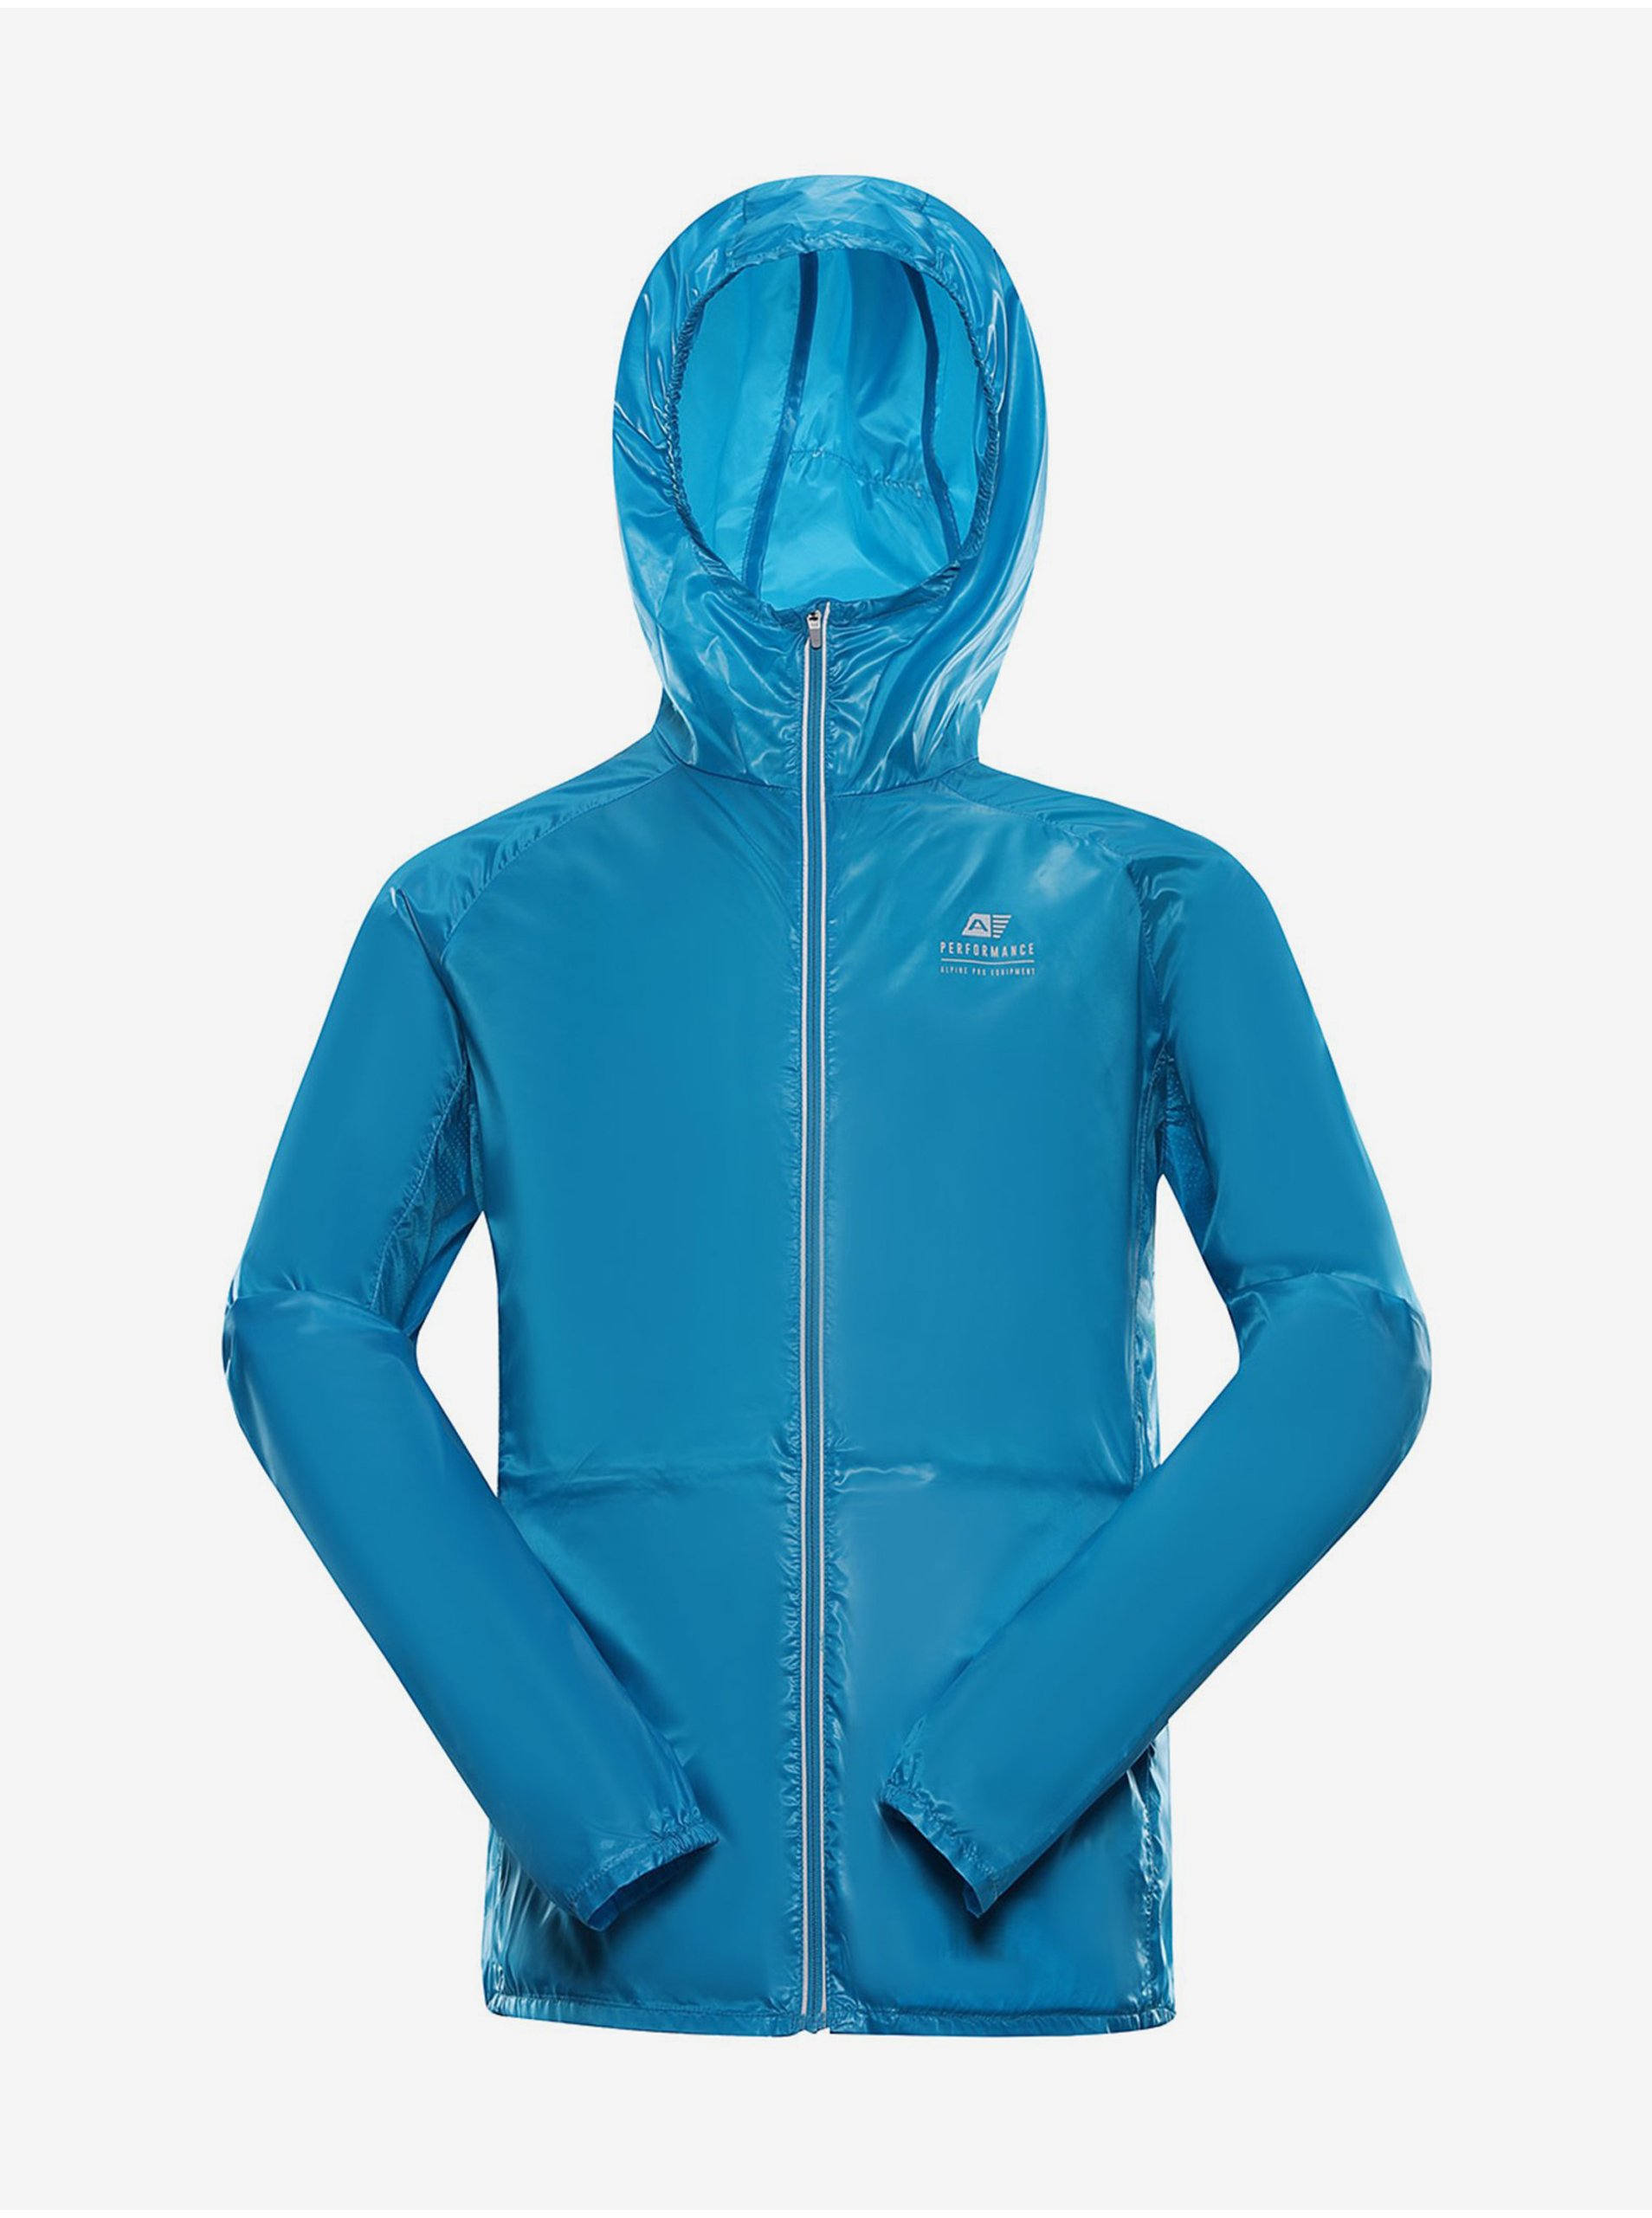 Levně Pánská ultralehká bunda s impregnací ALPINE PRO BIK modrá